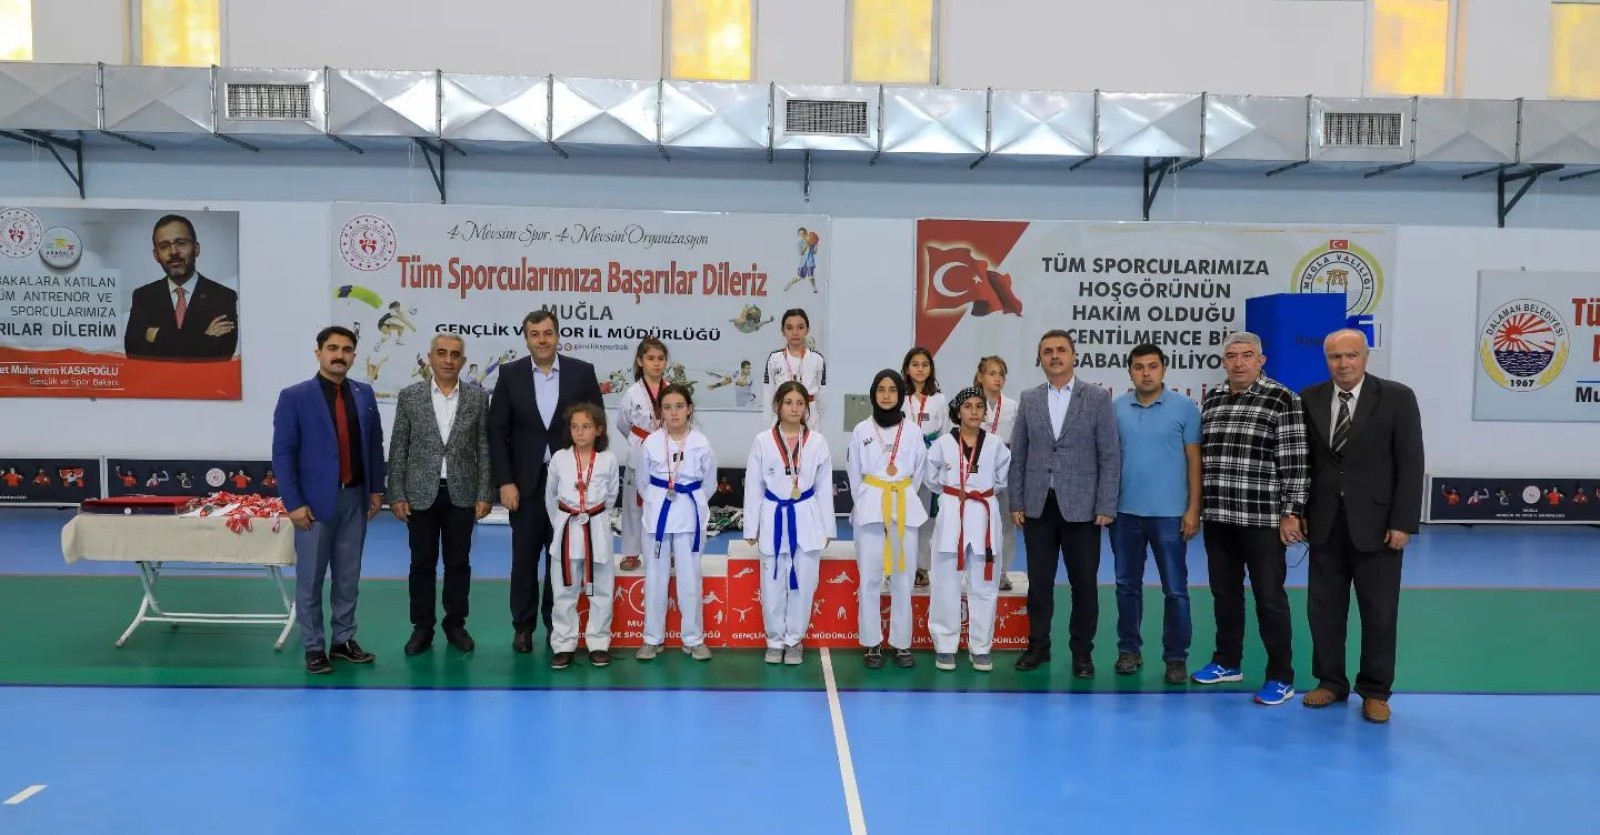 Dalaman Atatürk Kapalı Spor Salonunda Muğla Minikler ve Yıldızlar Taekwondo Şampiyonası Düzenlendi.